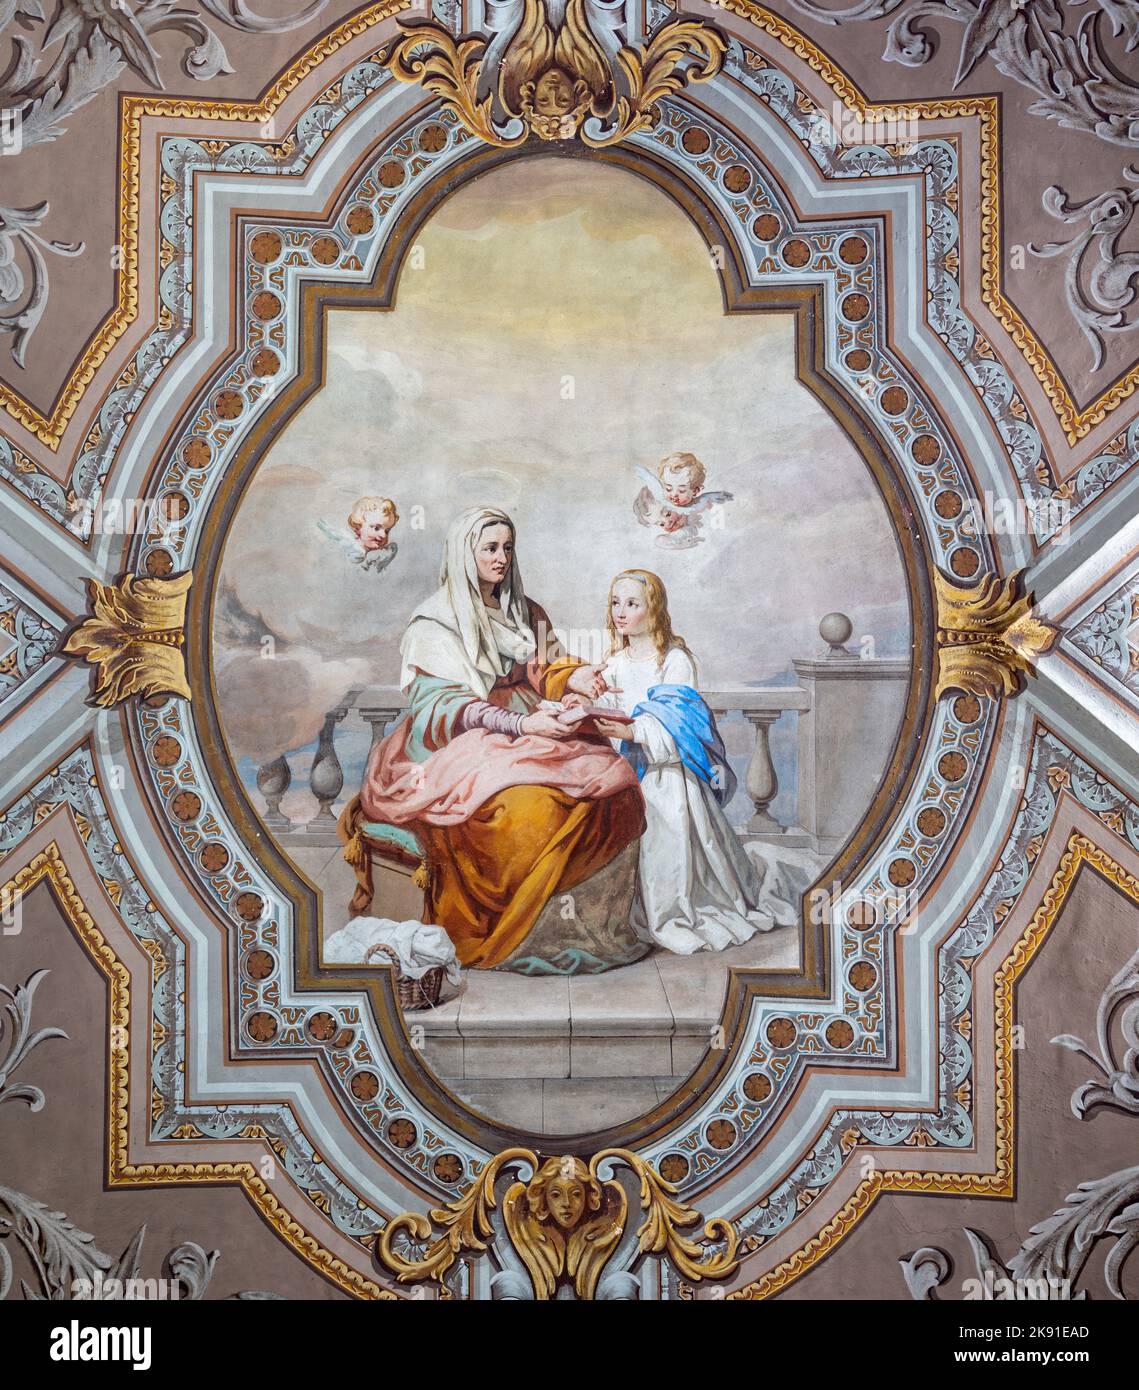 DOMODOSSOLA, ITALIA - 19 DE JULIO de 2022: El fresco neobarroco de Santa Ana con la Virgen María en el techo de la iglesia Santuario Madonna della Neve Foto de stock